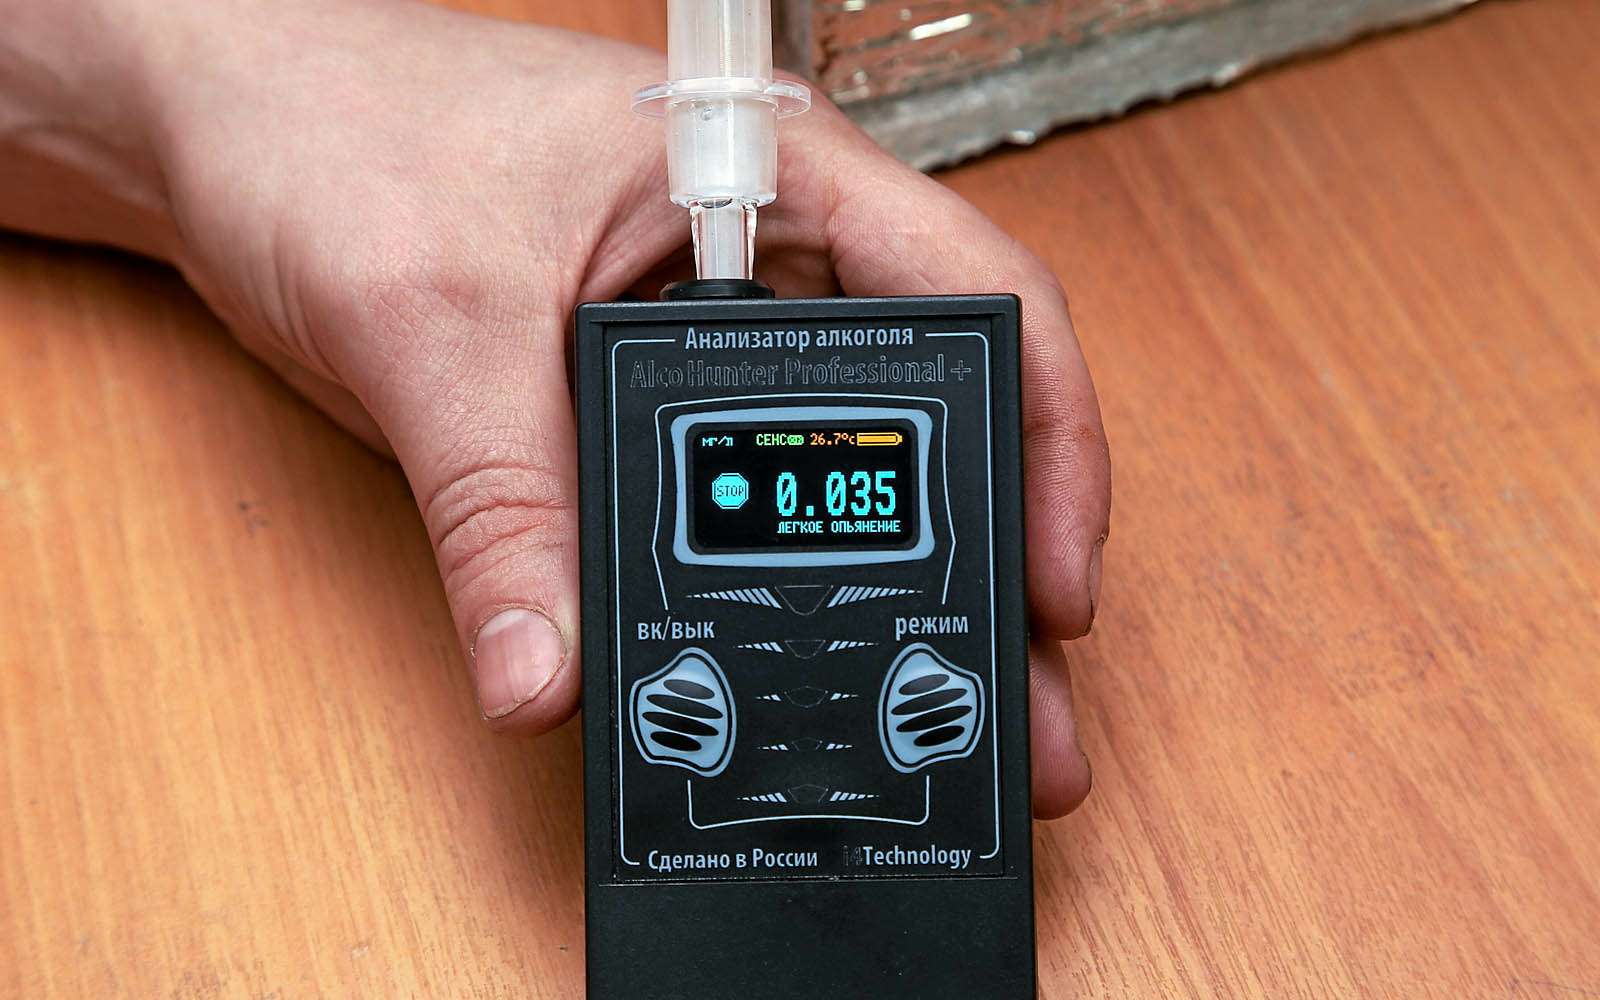 Уже 0,035 миллиграмма этилового спирта на литр выдыхаемого воздуха диагностируются прибором как легкая степень опьянения. Этот алкостестер слишком суров.